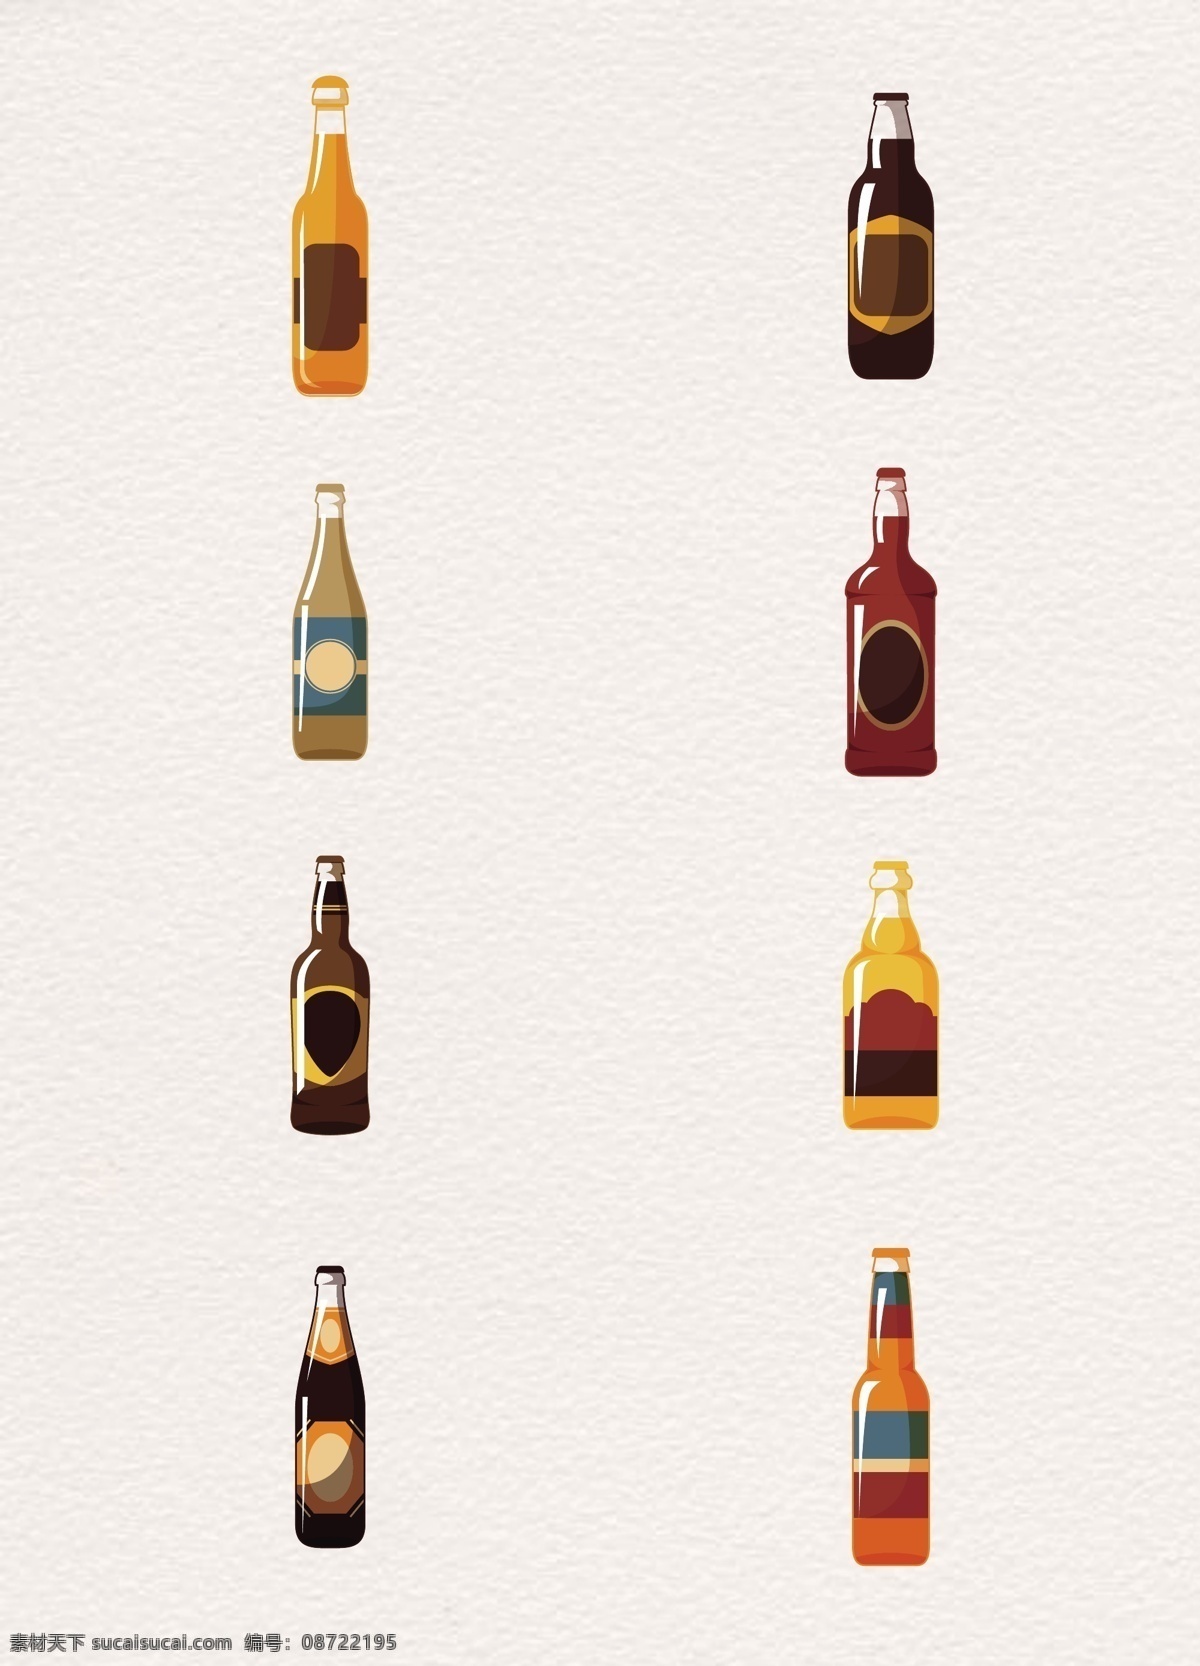 彩绘 瓶装 啤酒 矢量 玻璃瓶 矢量图 饮料 酒